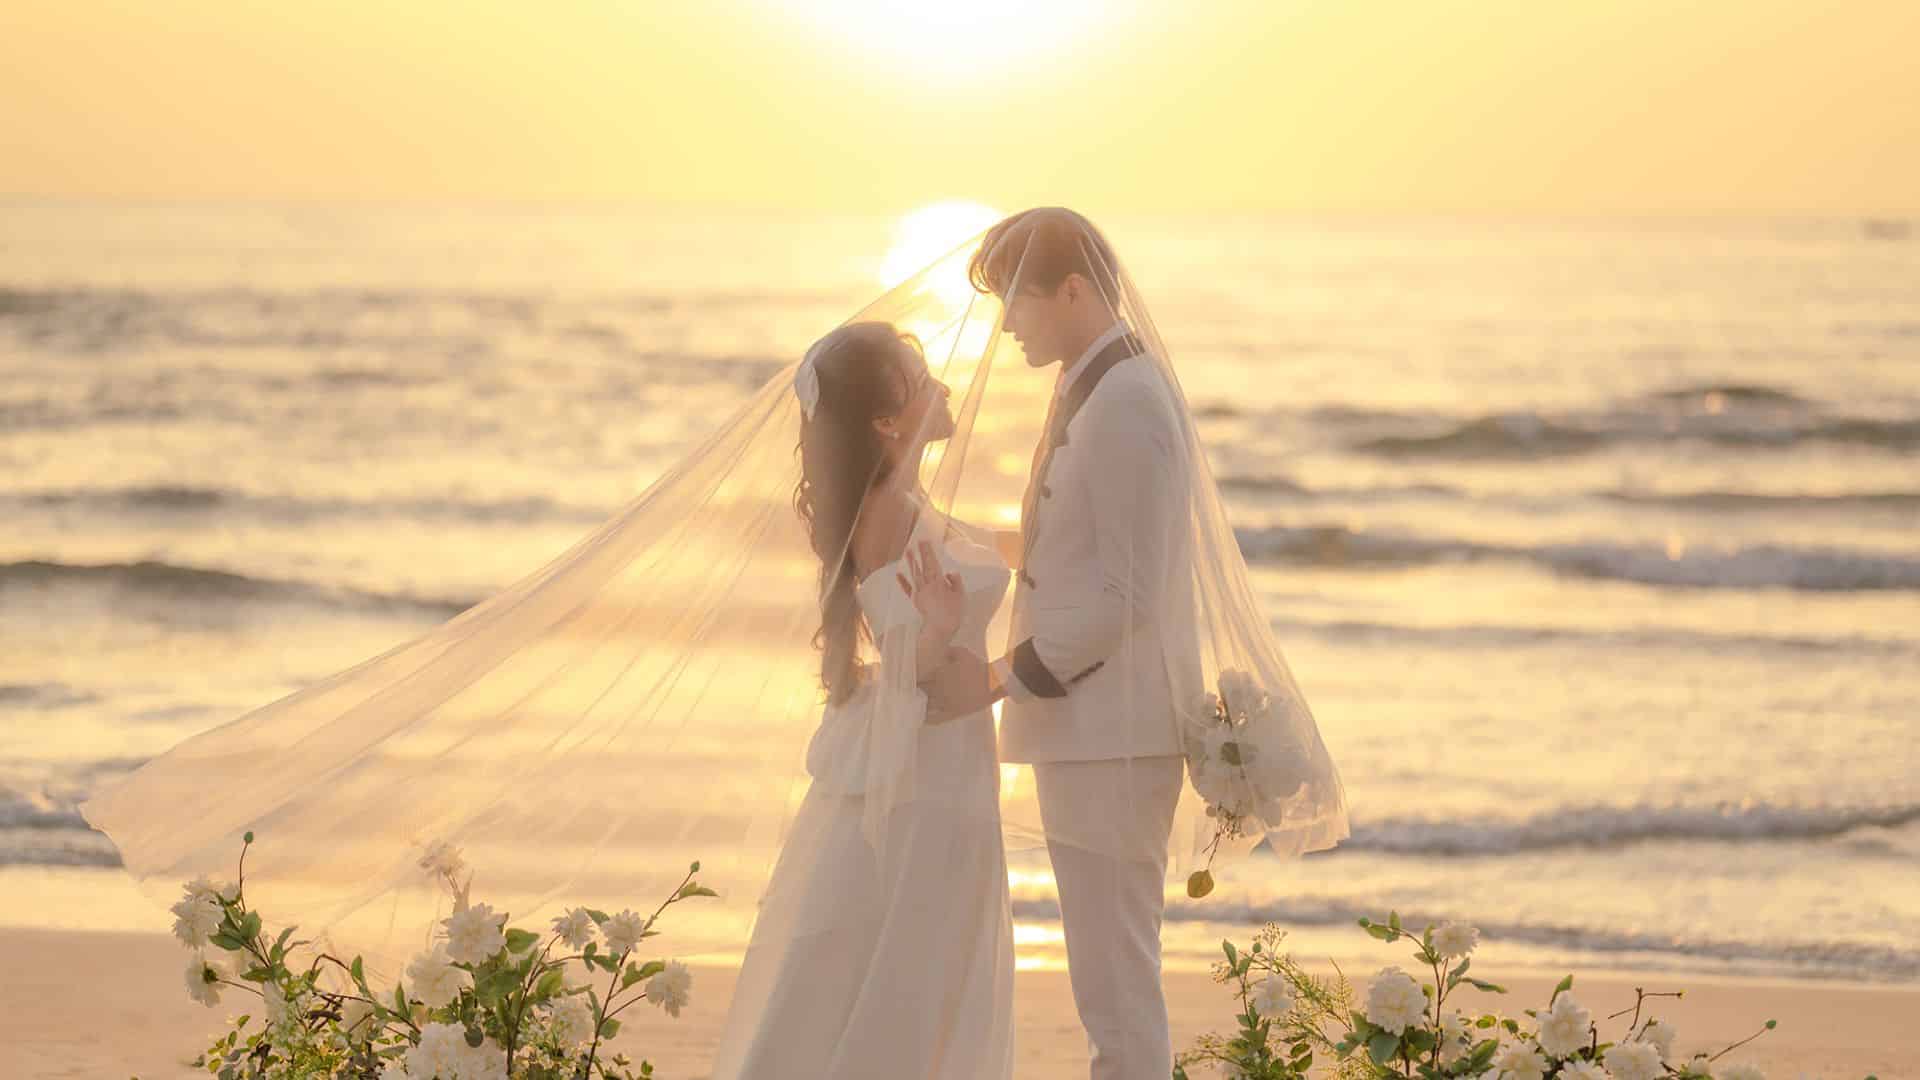 Lai Hoa Wedding - Địa chỉ chụp ảnh cưới đẹp Đà Nẵng chất lượng 